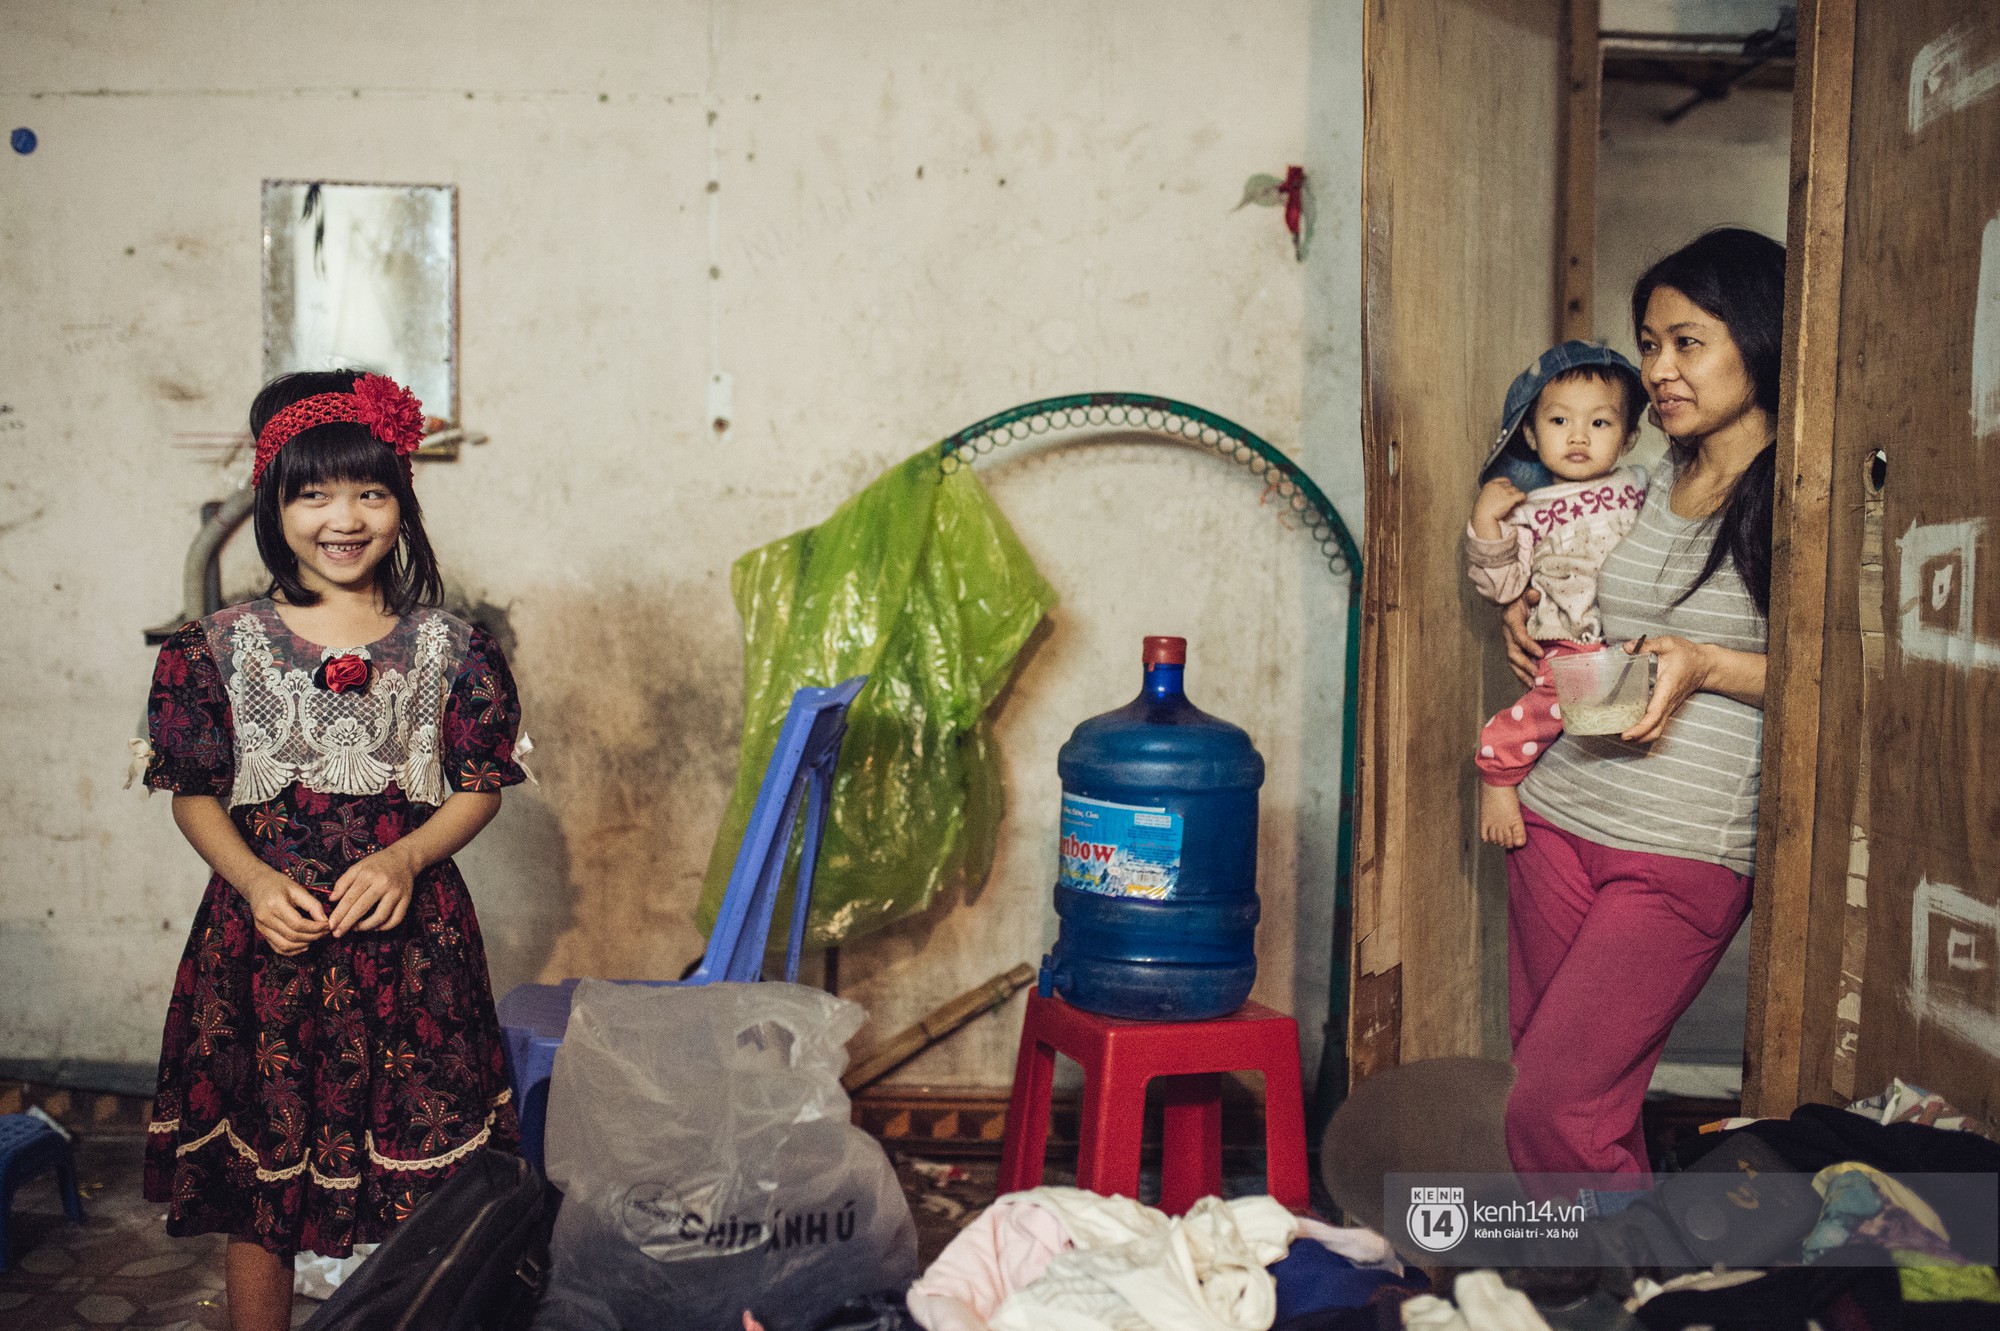 Chùm ảnh: Những khoảnh khắc đốn tim của em bé nghèo có gu ăn mặc như fashionista ở Hà Nội - Ảnh 5.